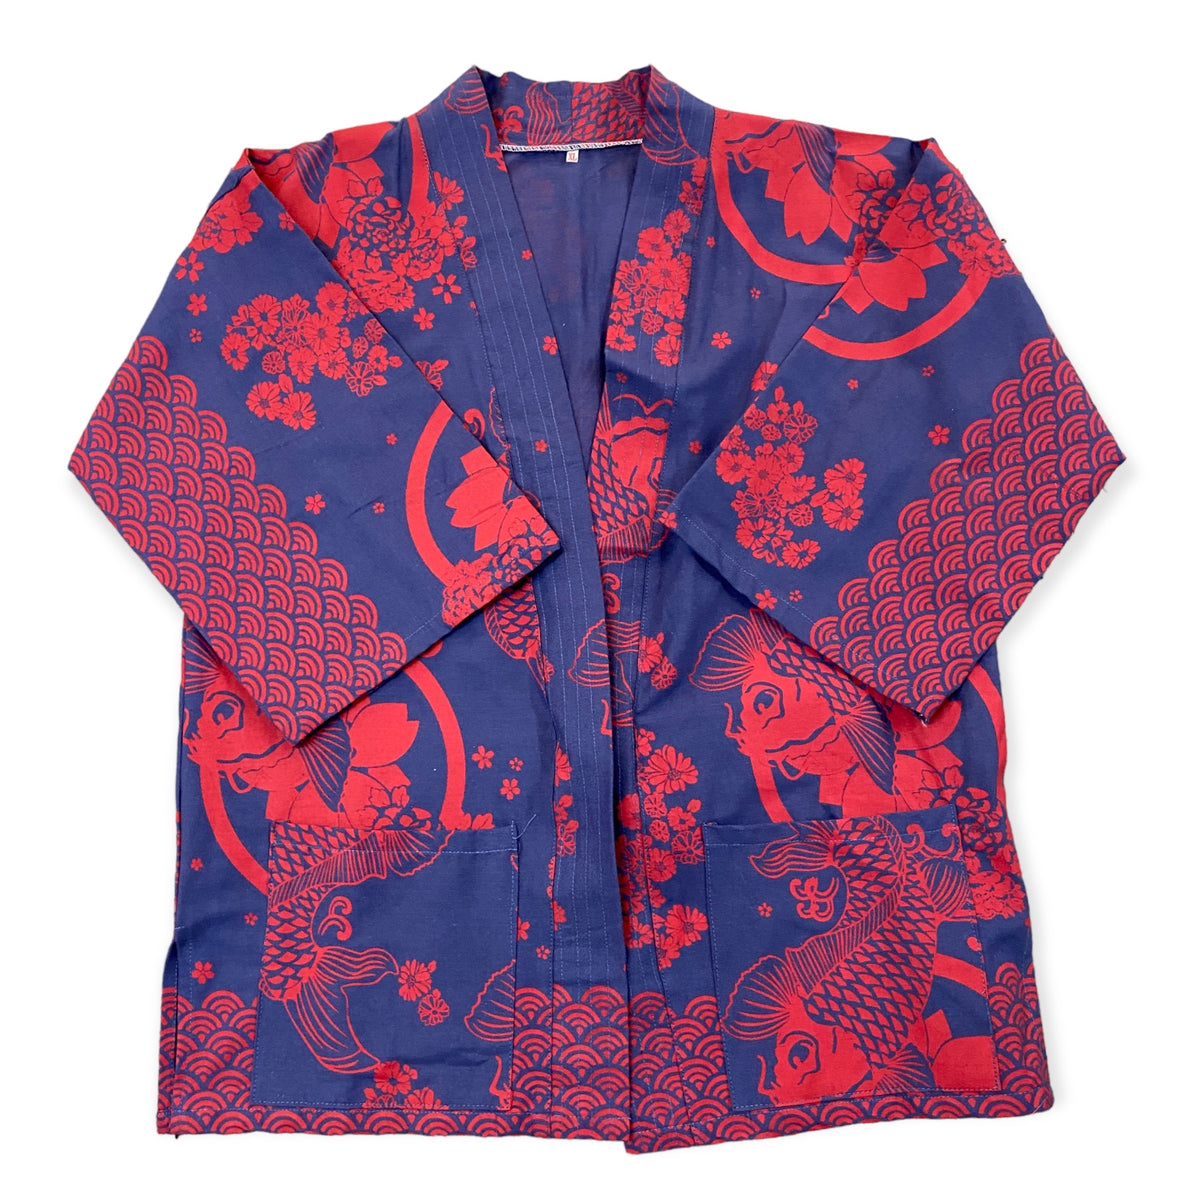 Indigo Dyed Kimono style top - Indigo/Red Koi